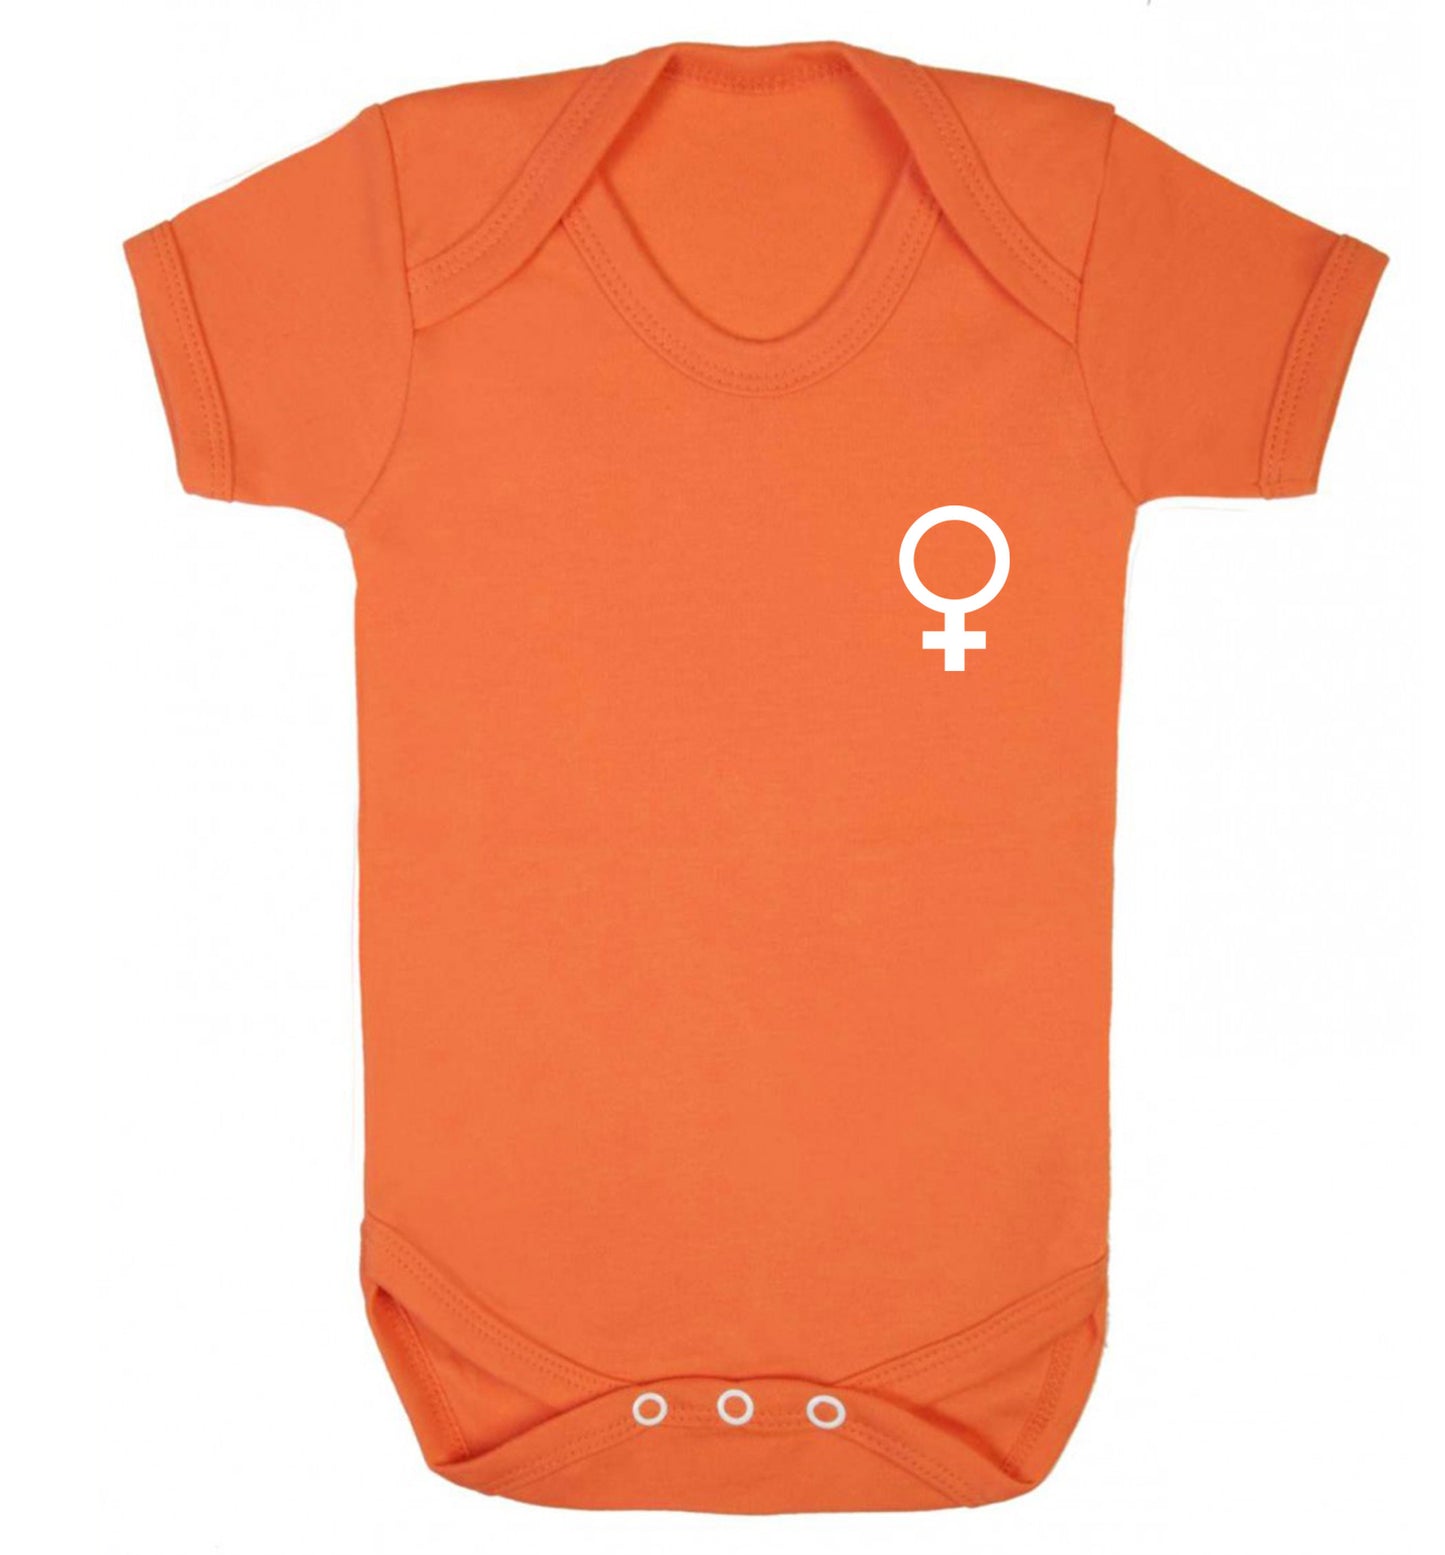 Female pocket symbol Baby Vest orange 18-24 months